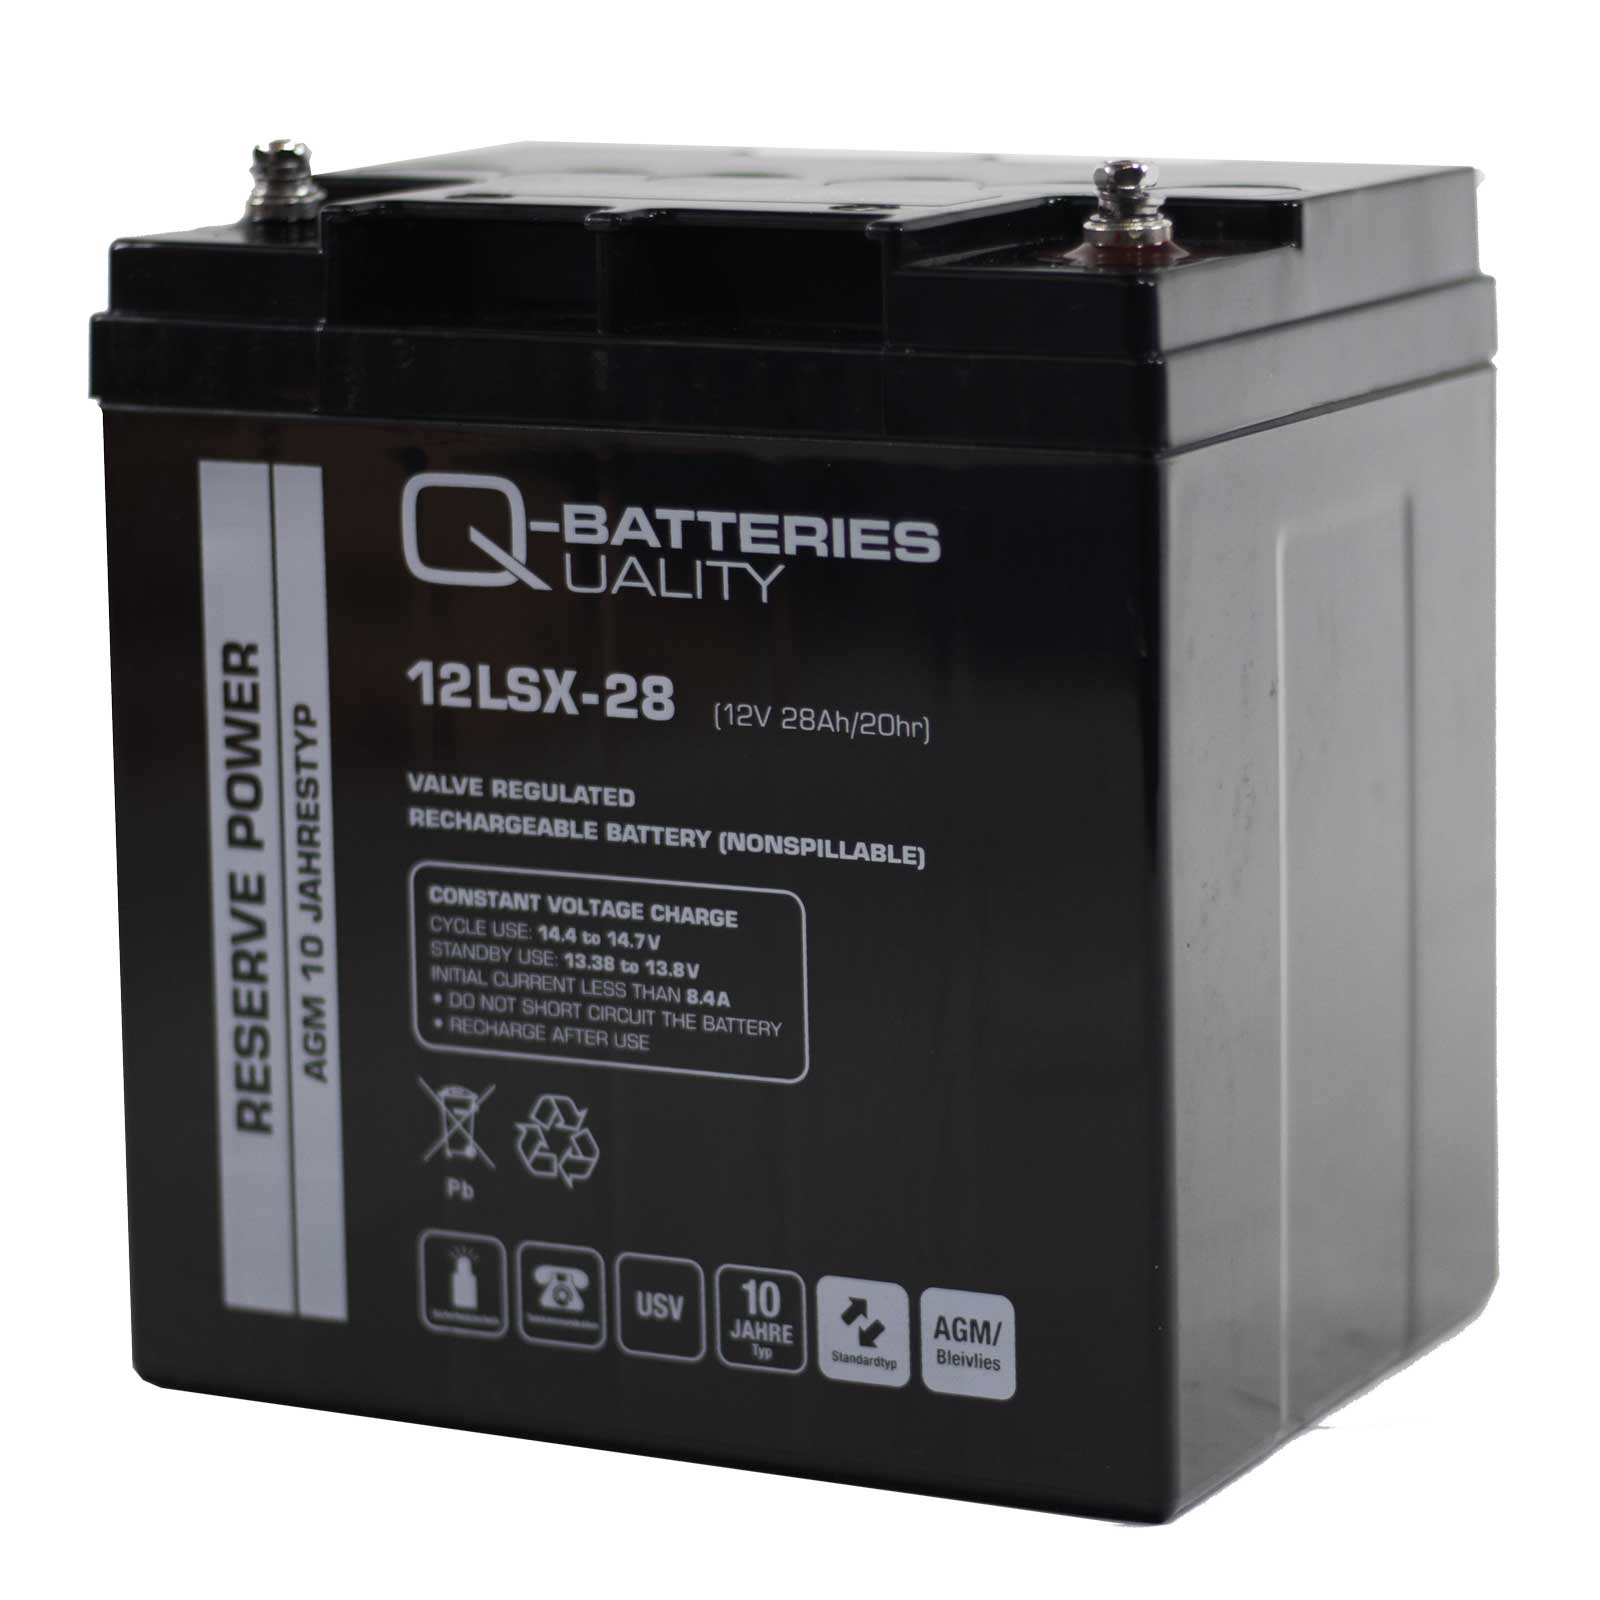 Q-Batteries 12LSX-28 12V 28Ah Blei-Vlies-Akku / AGM 10 Jahre